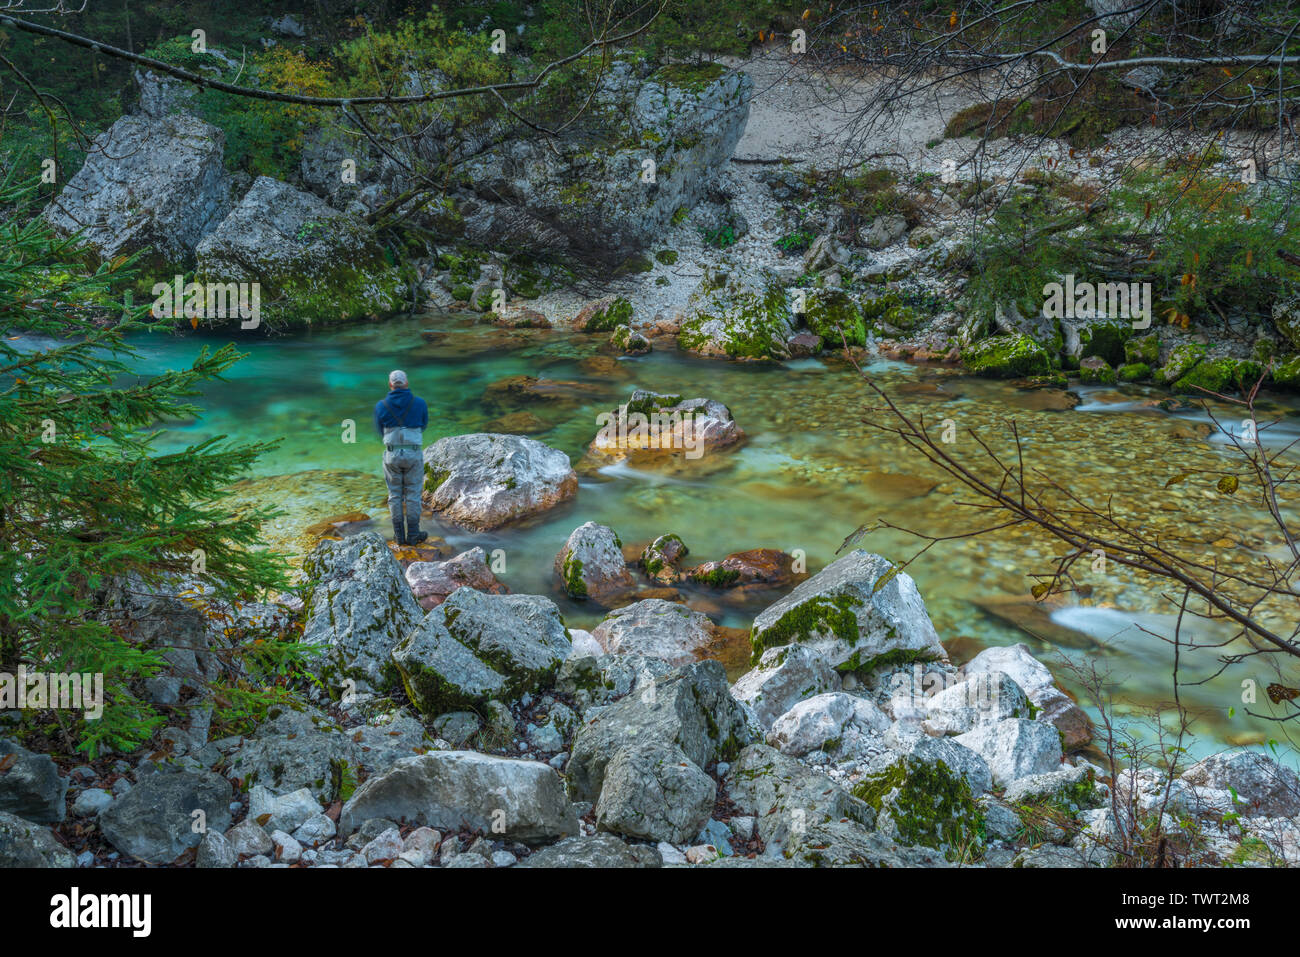 Pescatore solitario la pesca di trote lungo il fiume Soca in Slovenia. La pesca con la mosca in waders per la pesca alla trota lungo immacolate fiume di montagna con rapide. Foto Stock